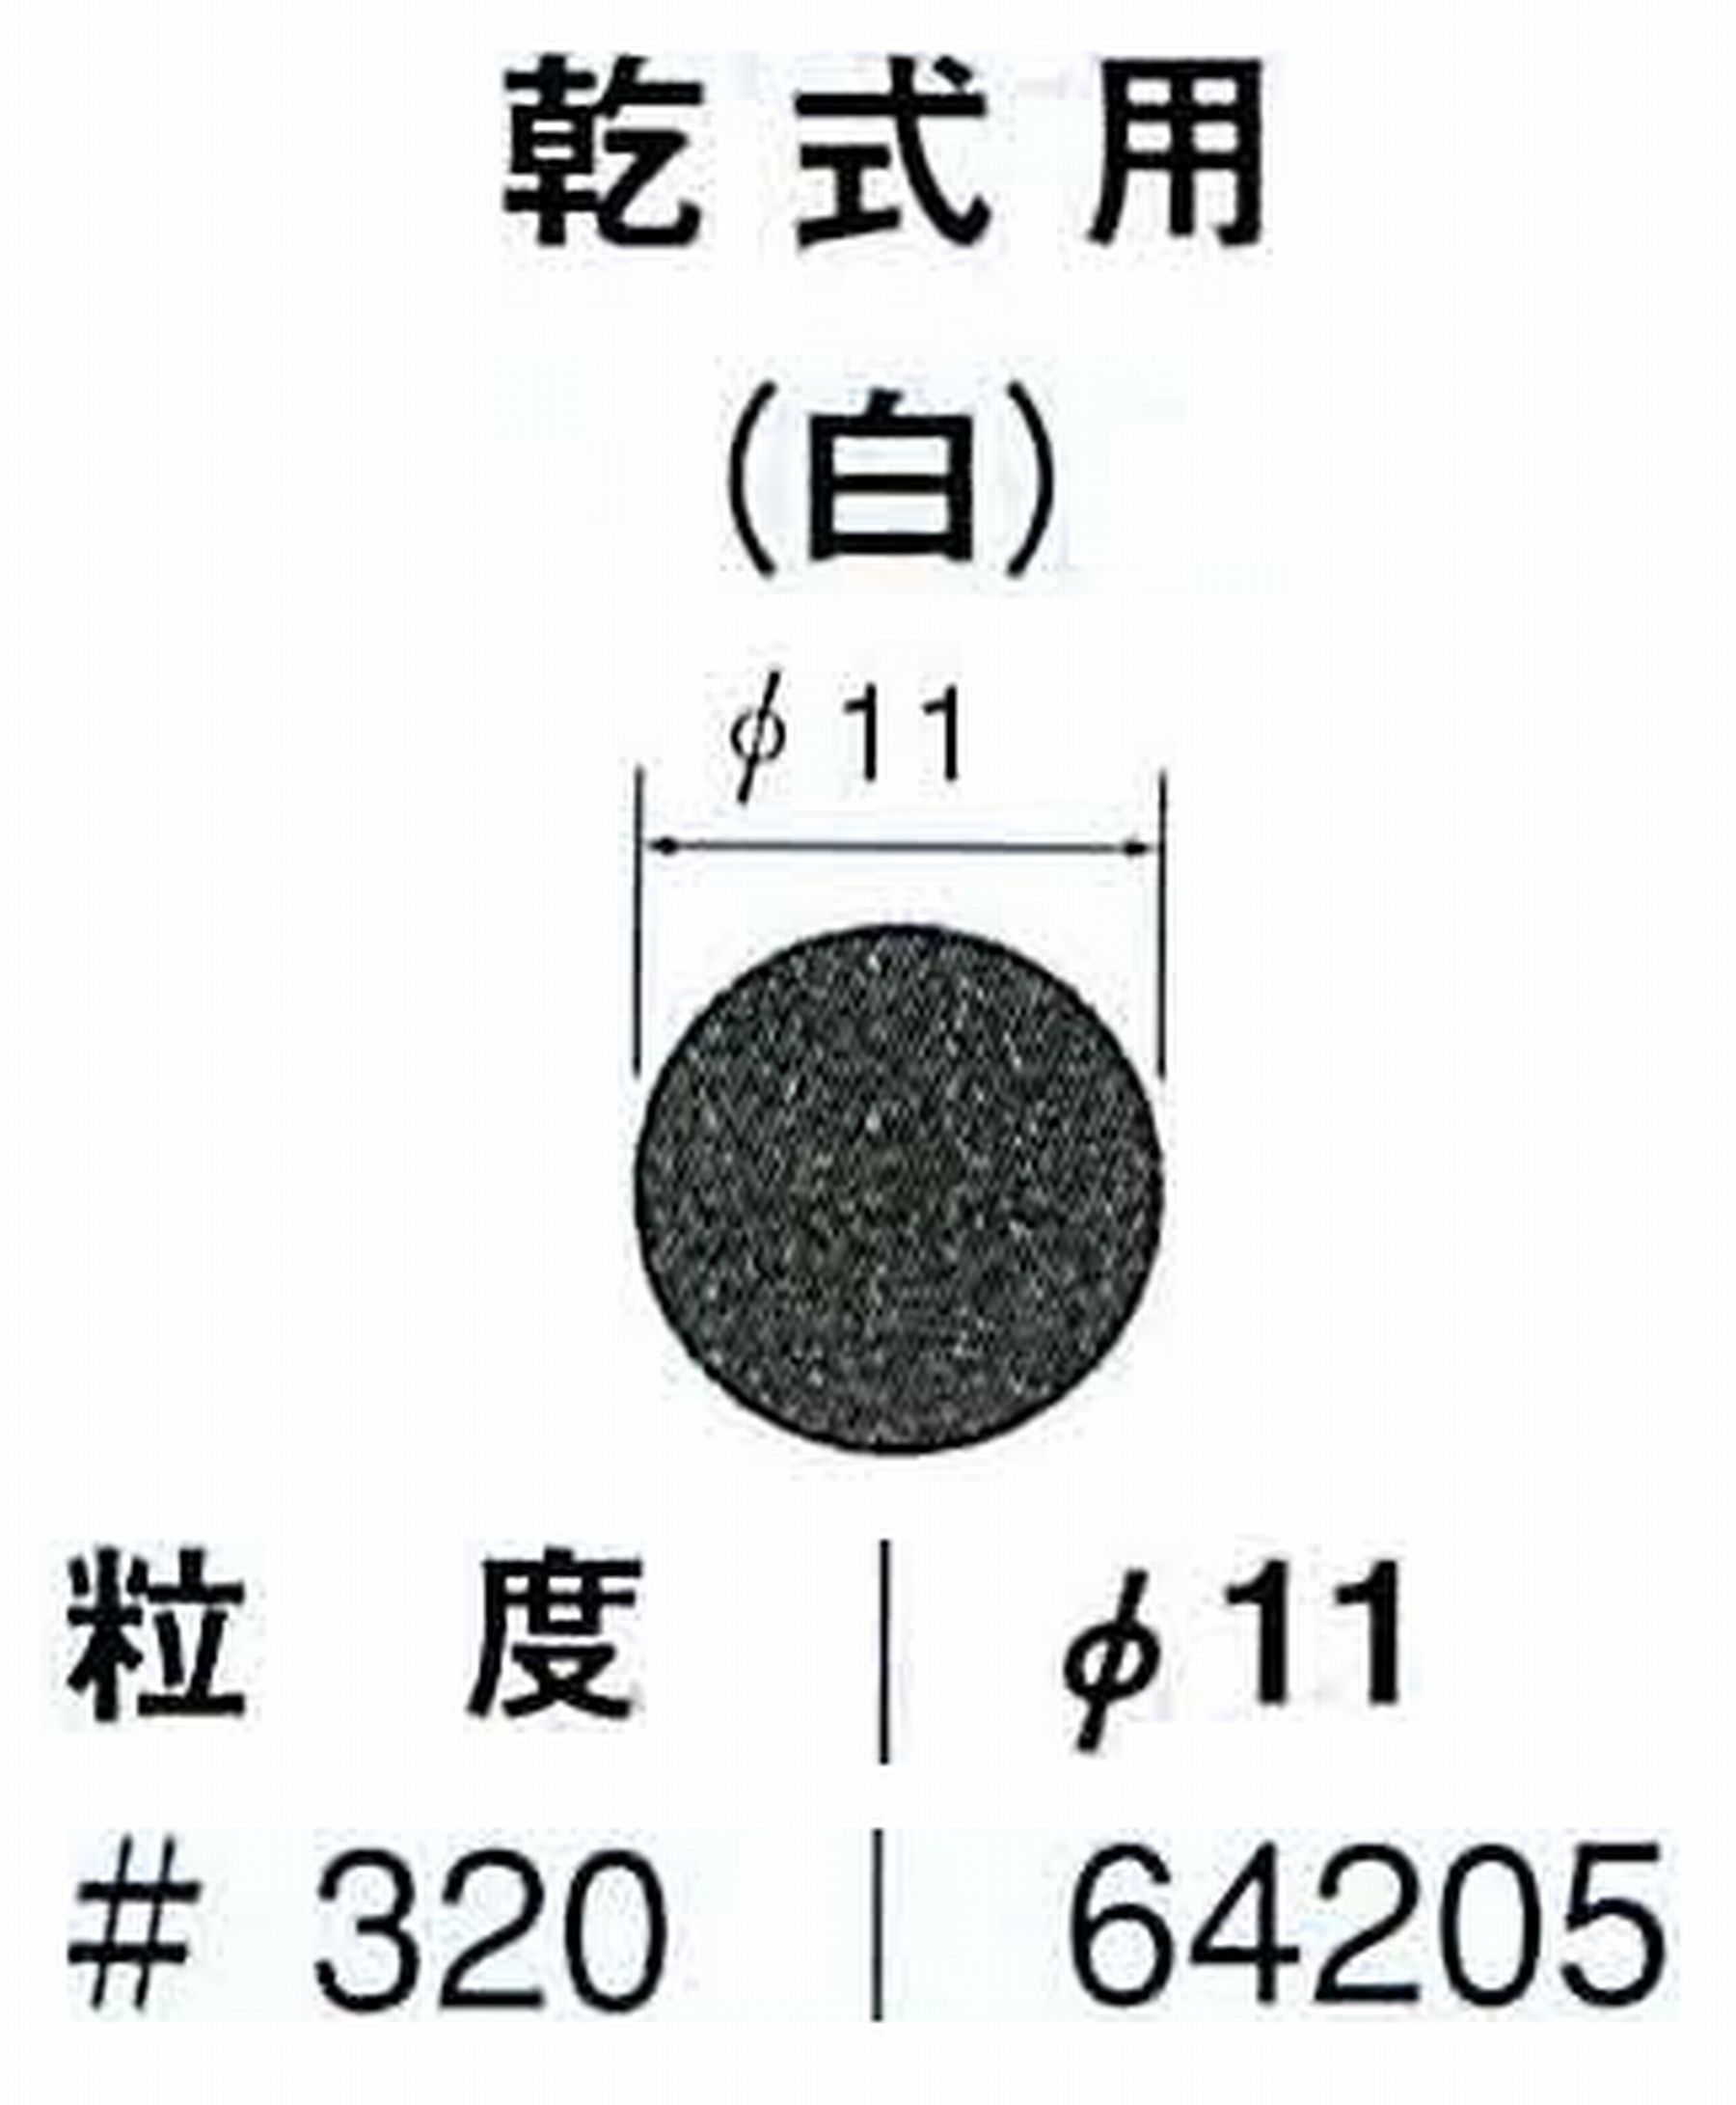 ナカニシ/NAKANISHI アングルグラインダ(電動・エアー) アングルアタッチメント専用工具 サンドペーパーディスク(紙基材タイプ)裏面のり処理 64205